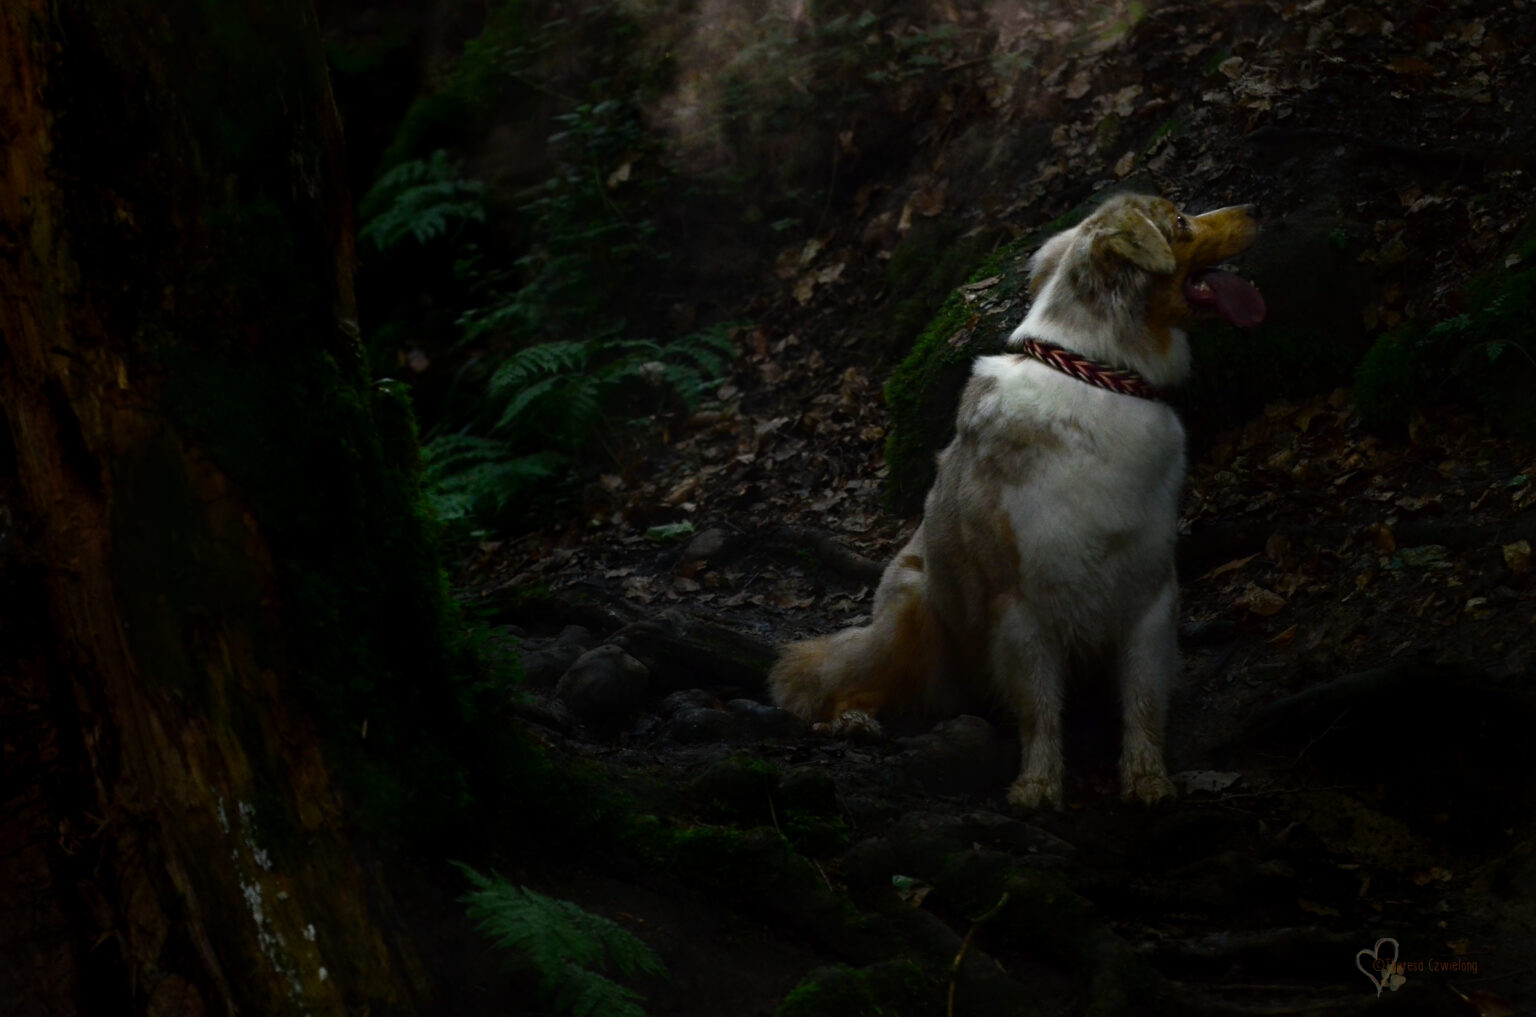 So viel zu entdecken im dunklen Wald! Das Pfeilspiel ist ein ziemlich dynamisches Muster und passt daher zu temperamentvollen Hunden besonders gut.